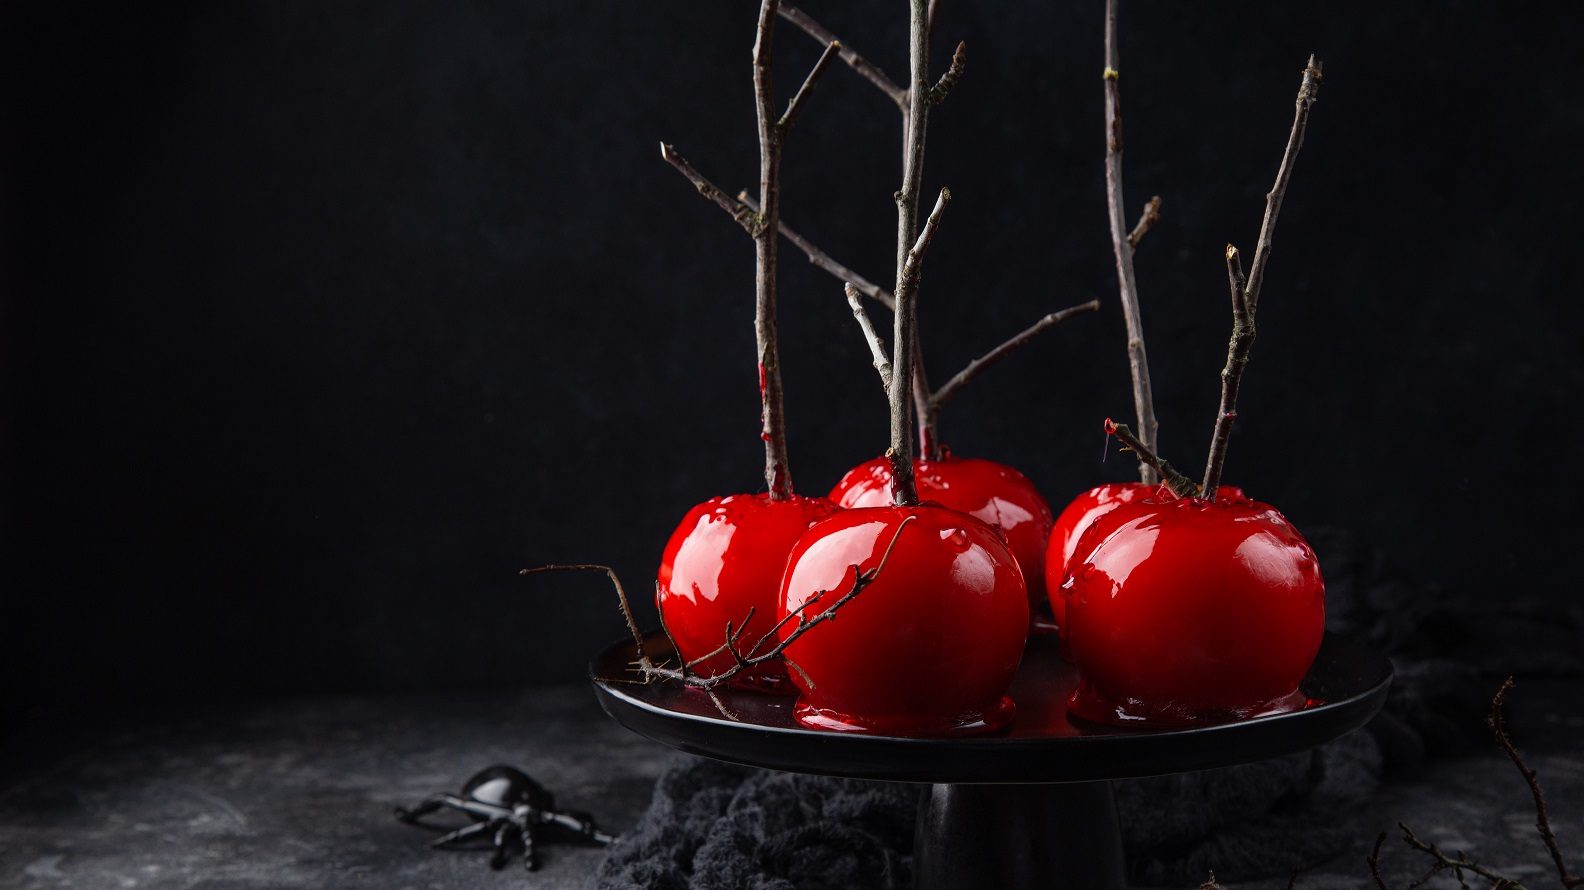 Unsere kandierten Äpfel liegen leicht mystisch angerichtet auf einem schwarzen Teller vor einem schwarzen Hintergrund.